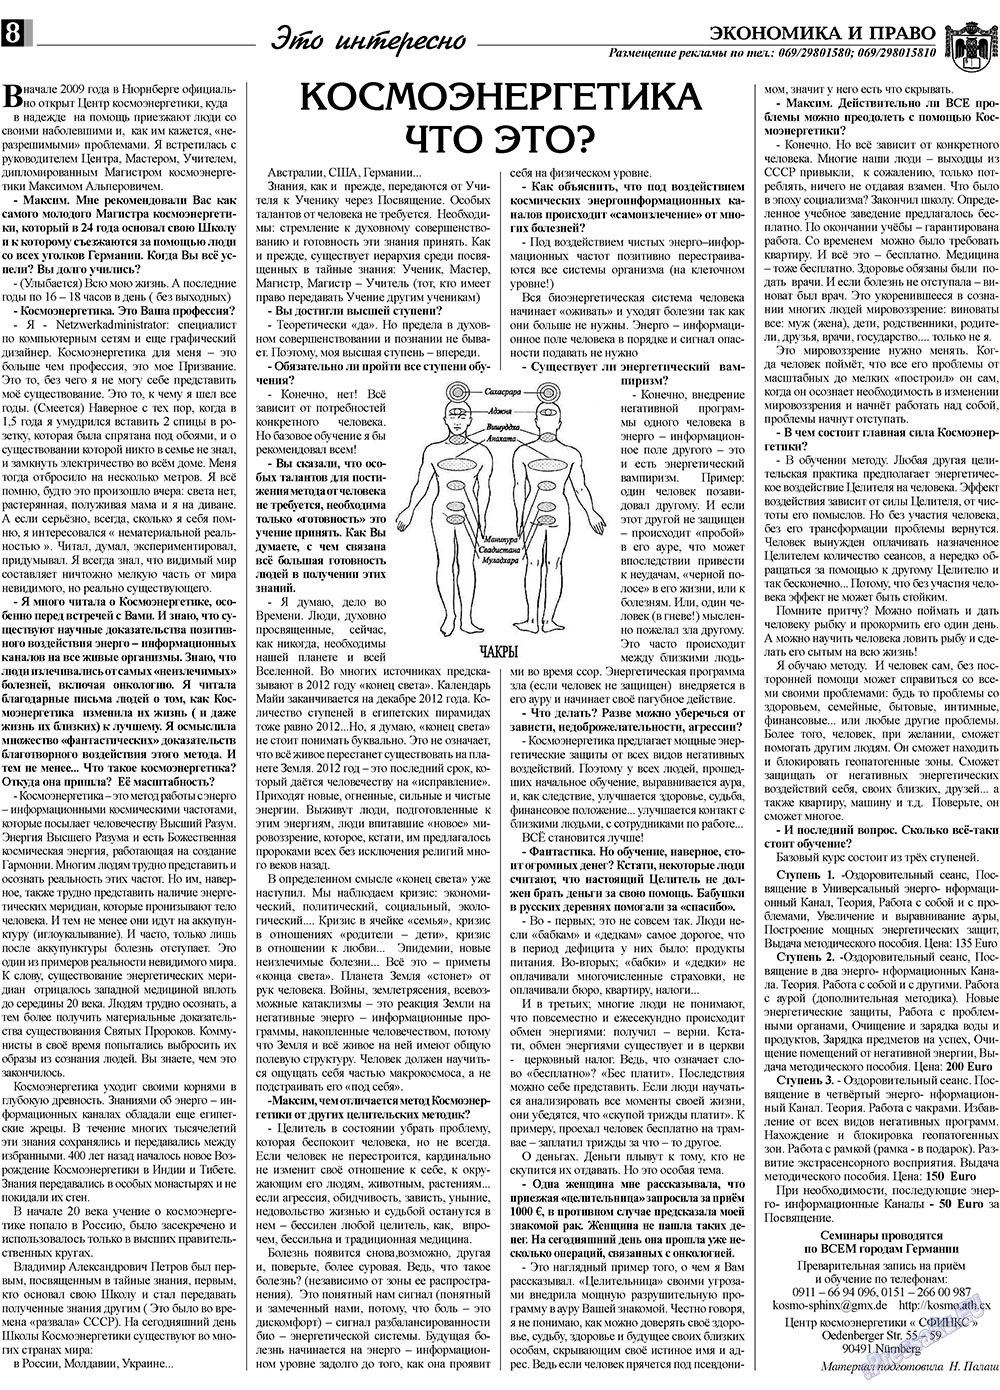 Экономика и право, газета. 2009 №10 стр.8